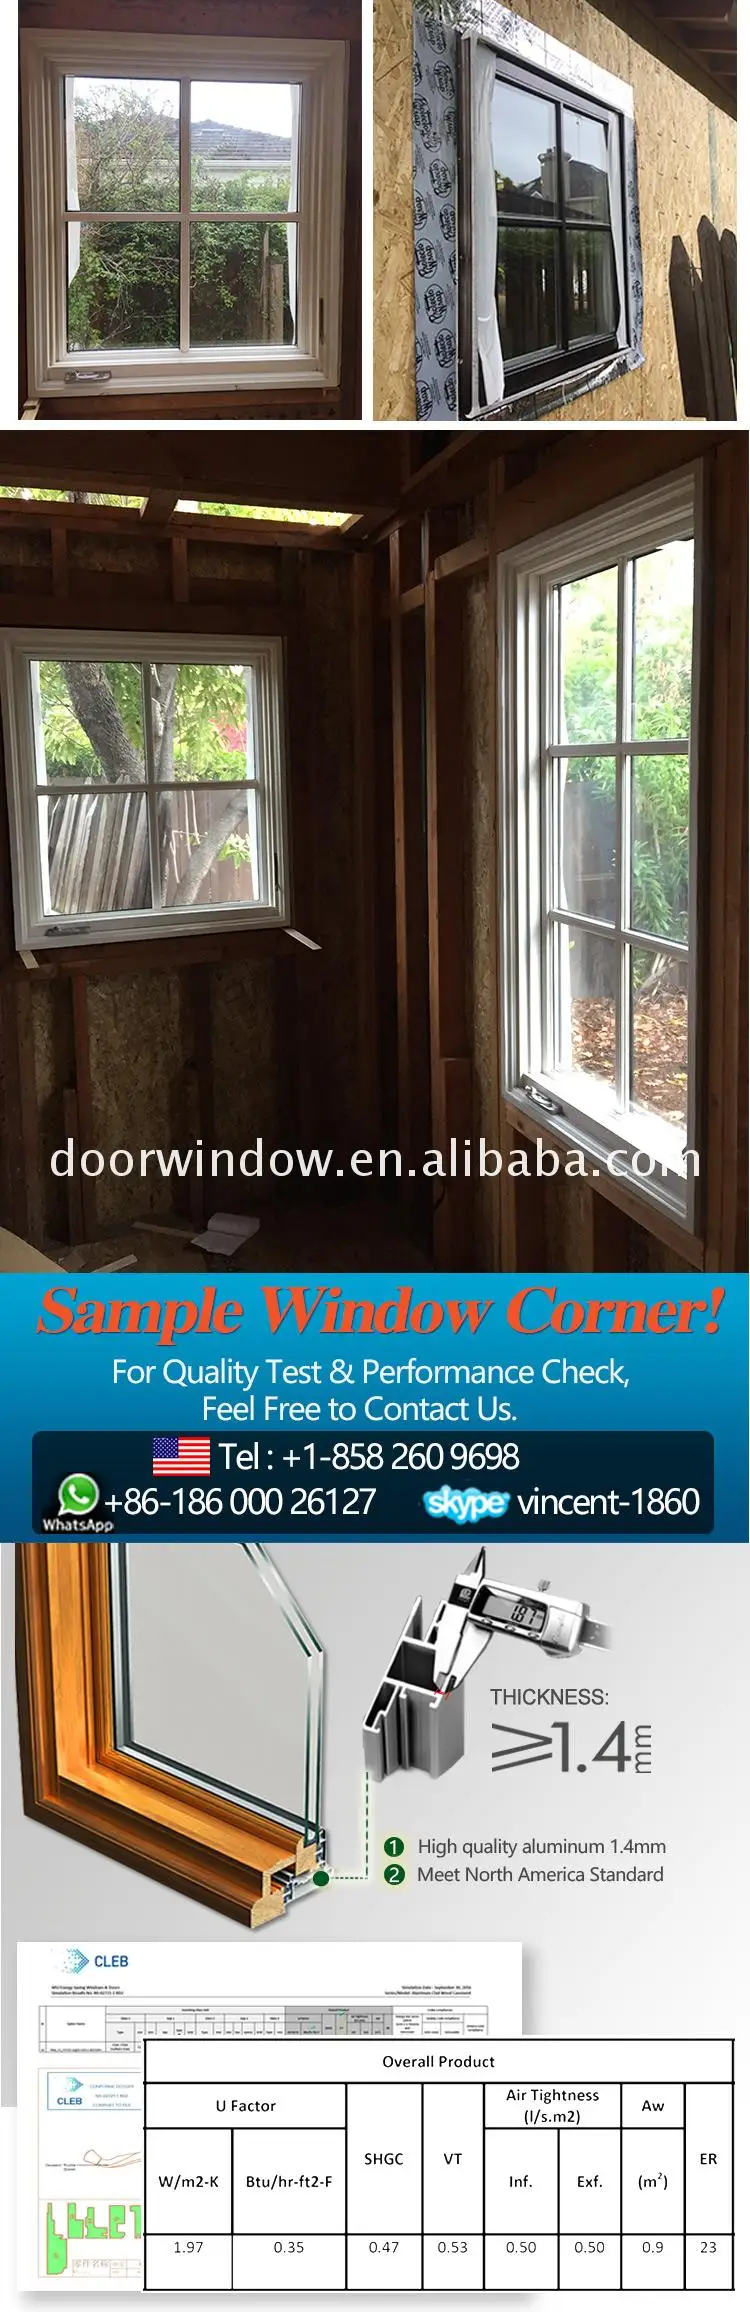 Windsor round window manufacturer round window house horizontal open round window